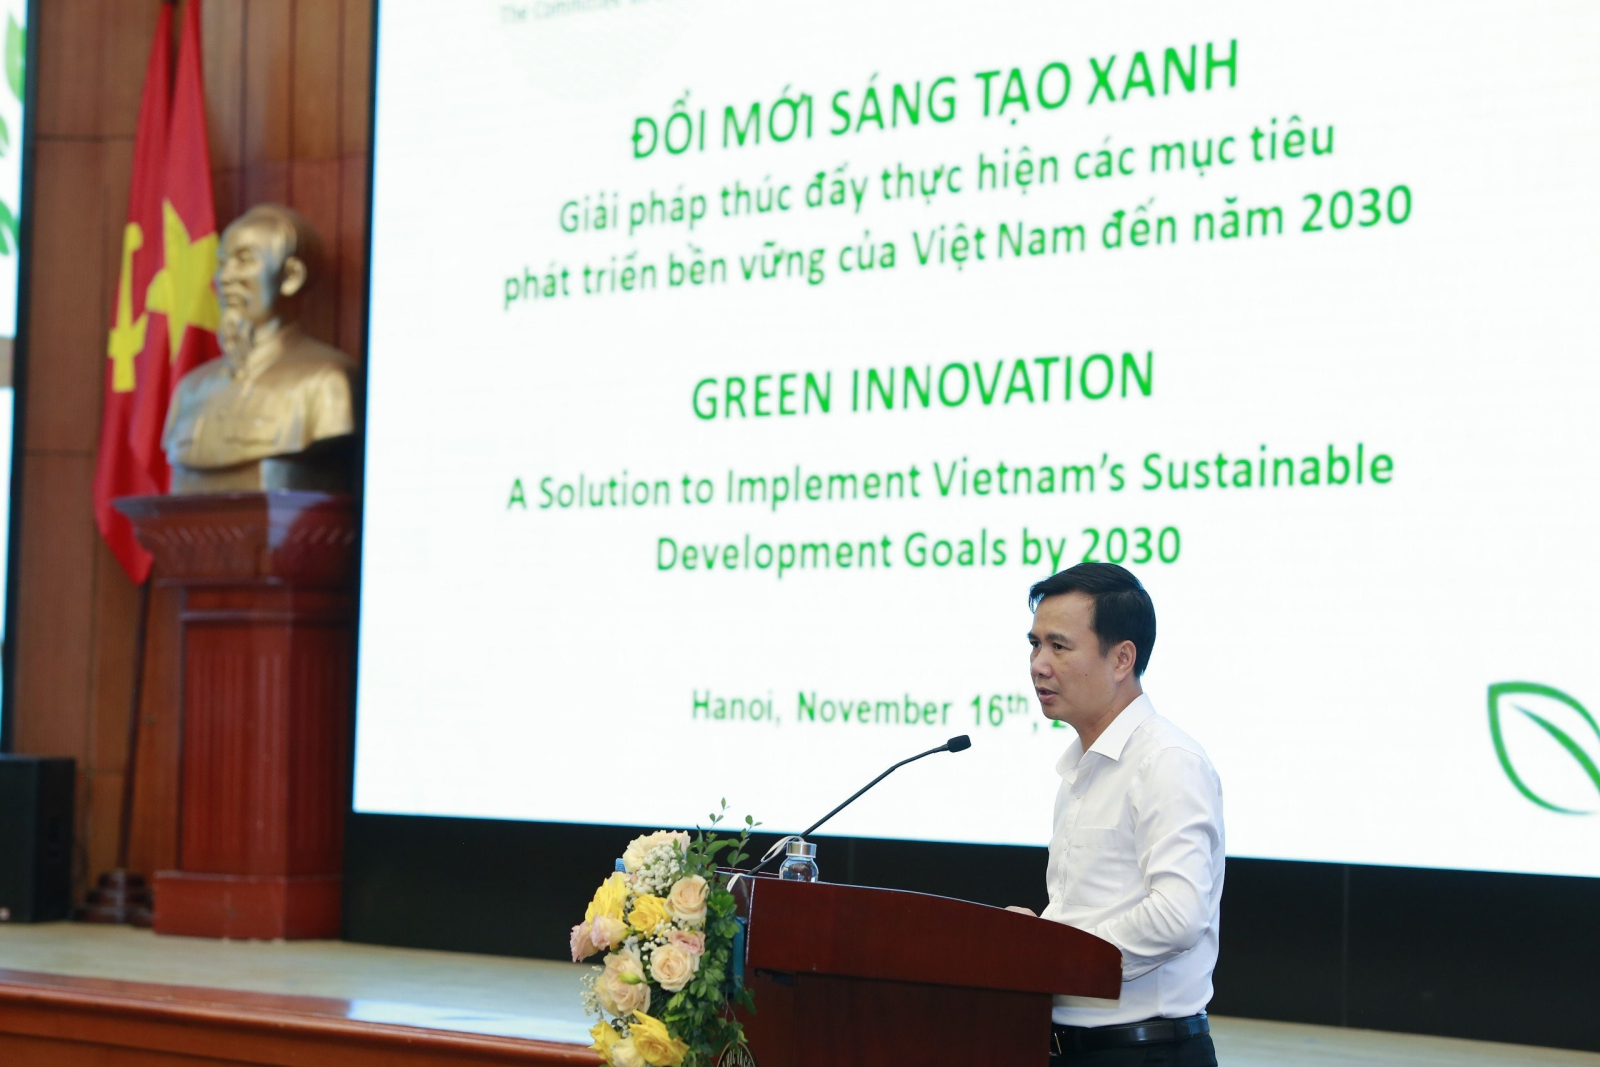 Thúc đẩy đổi mới sáng tạo xanh - giải pháp thực hiện các mục tiêu phát triển bền vững của Việt Nam đến năm 2030 - Ảnh 2.